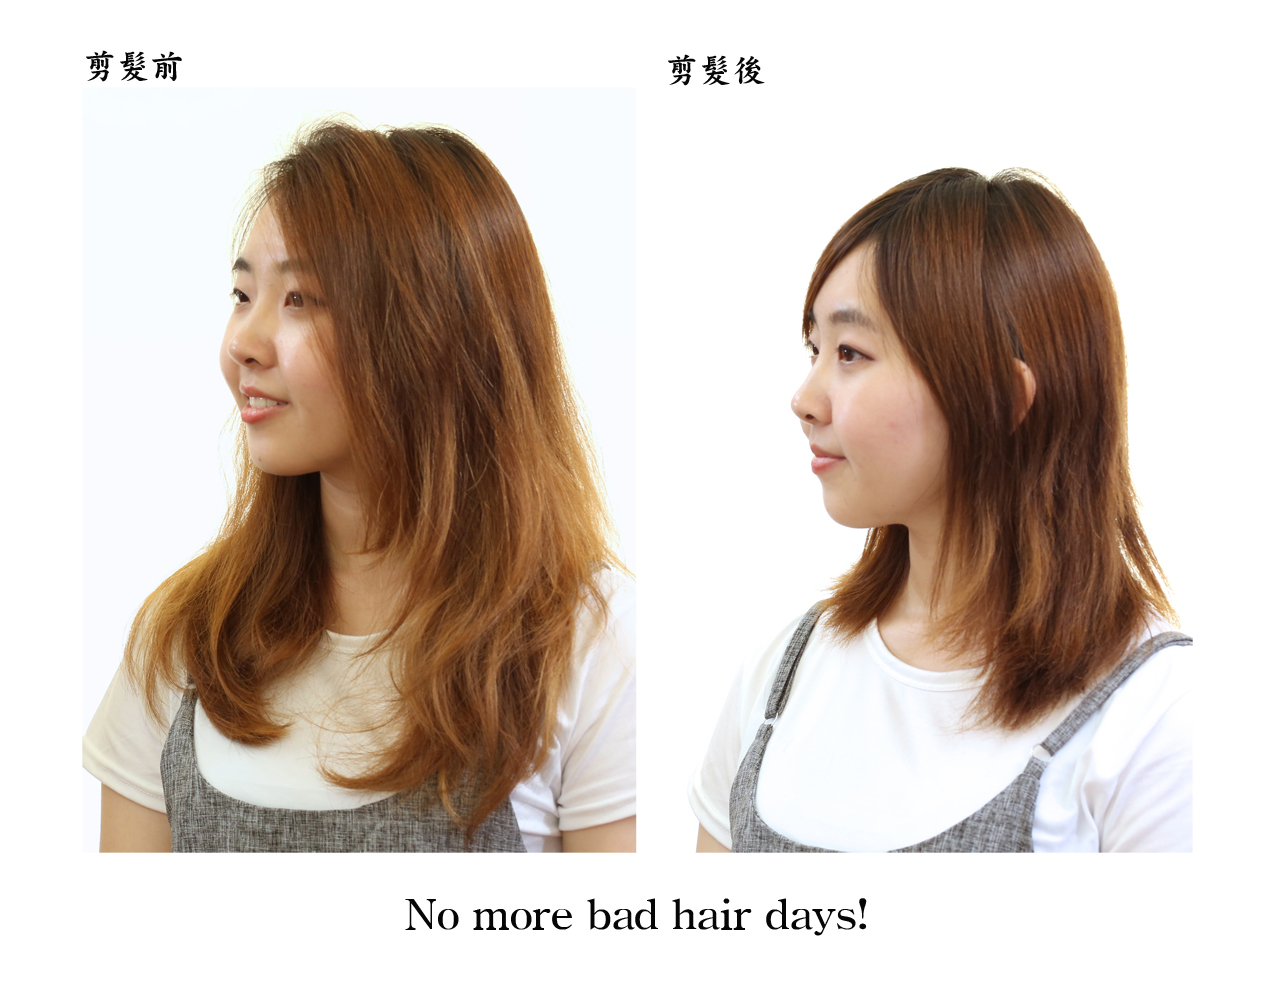 20180908林小姐剪髮前後左側面組圖照1